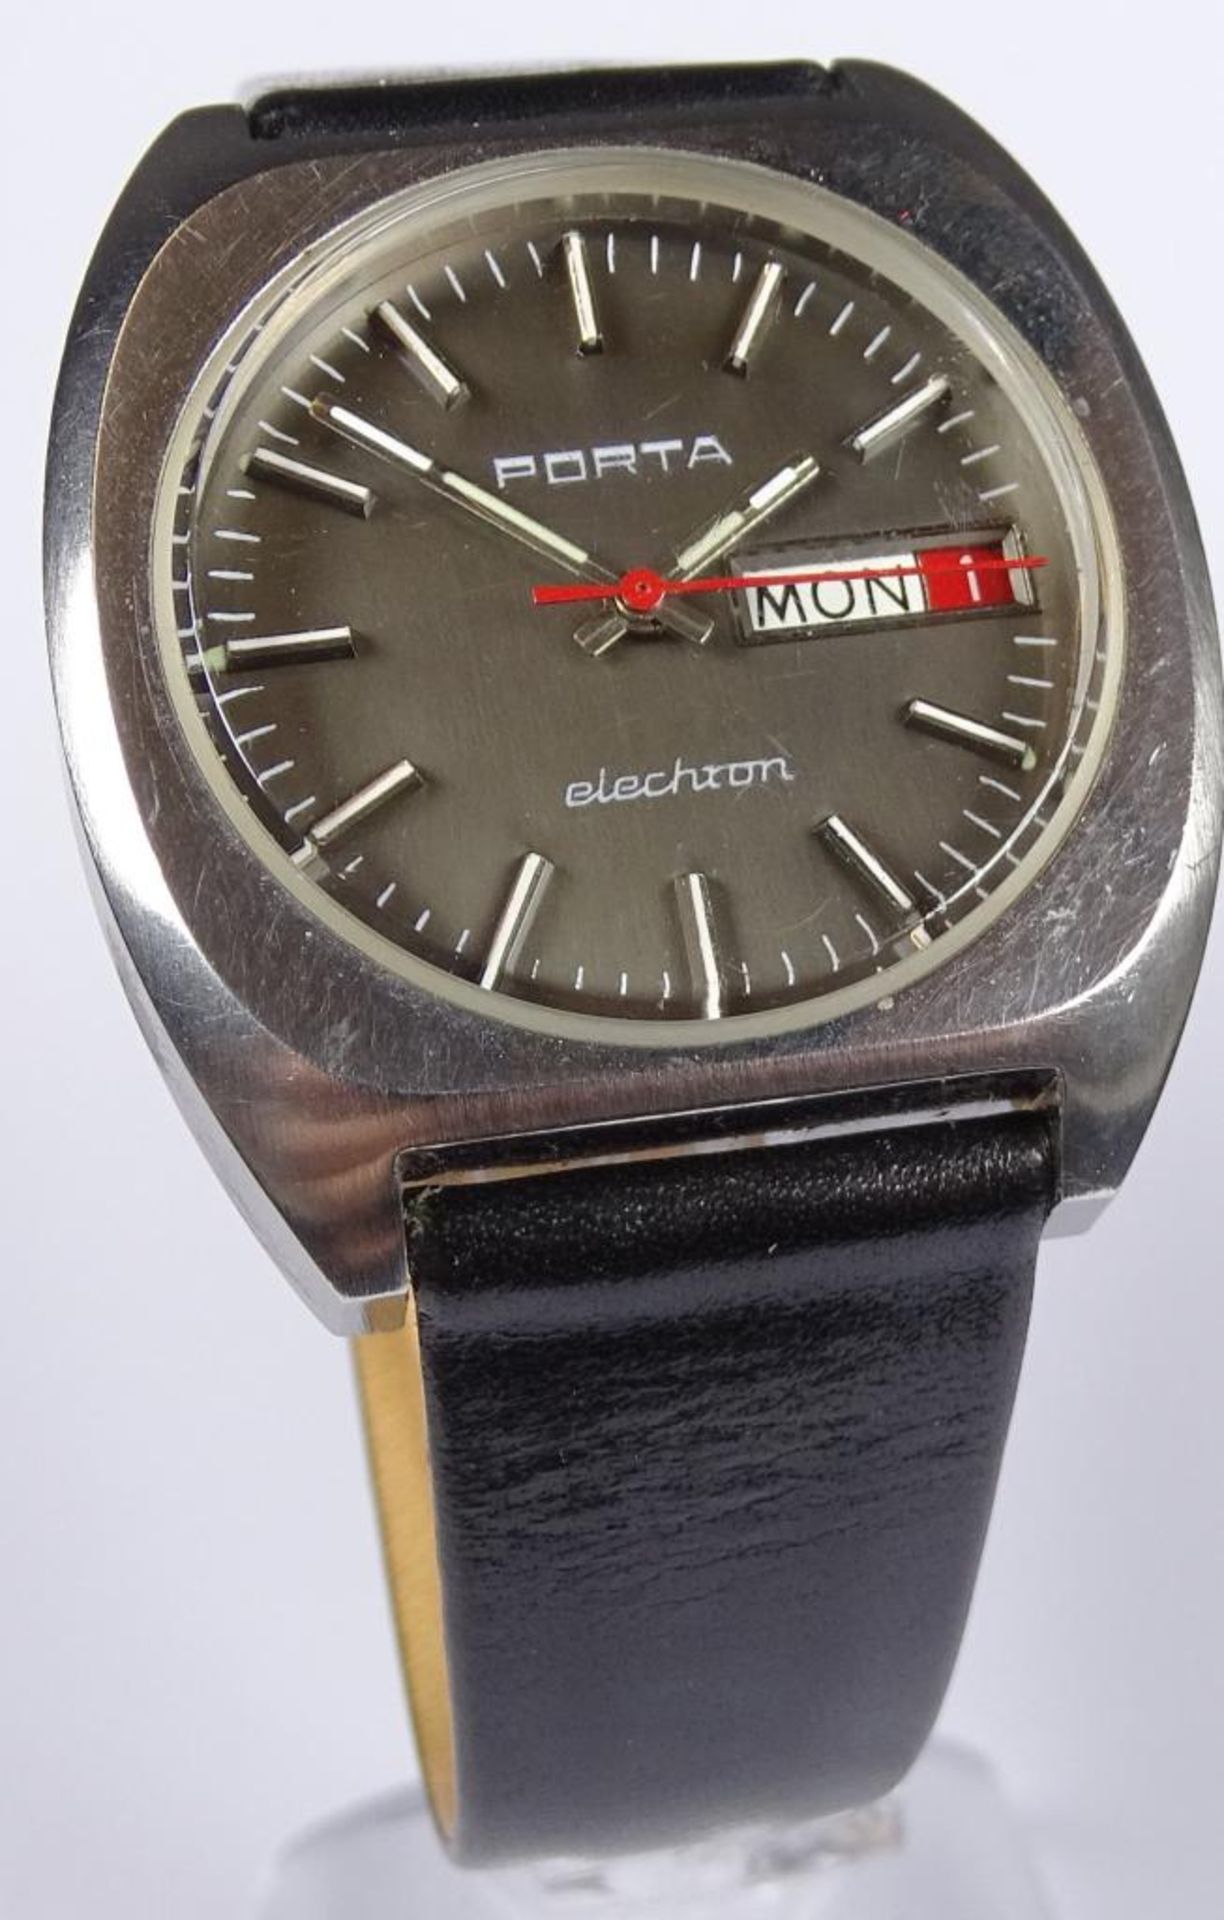 Armbanduhr "Porta",elechron,Werk steht,Edelstahl - Bild 2 aus 4